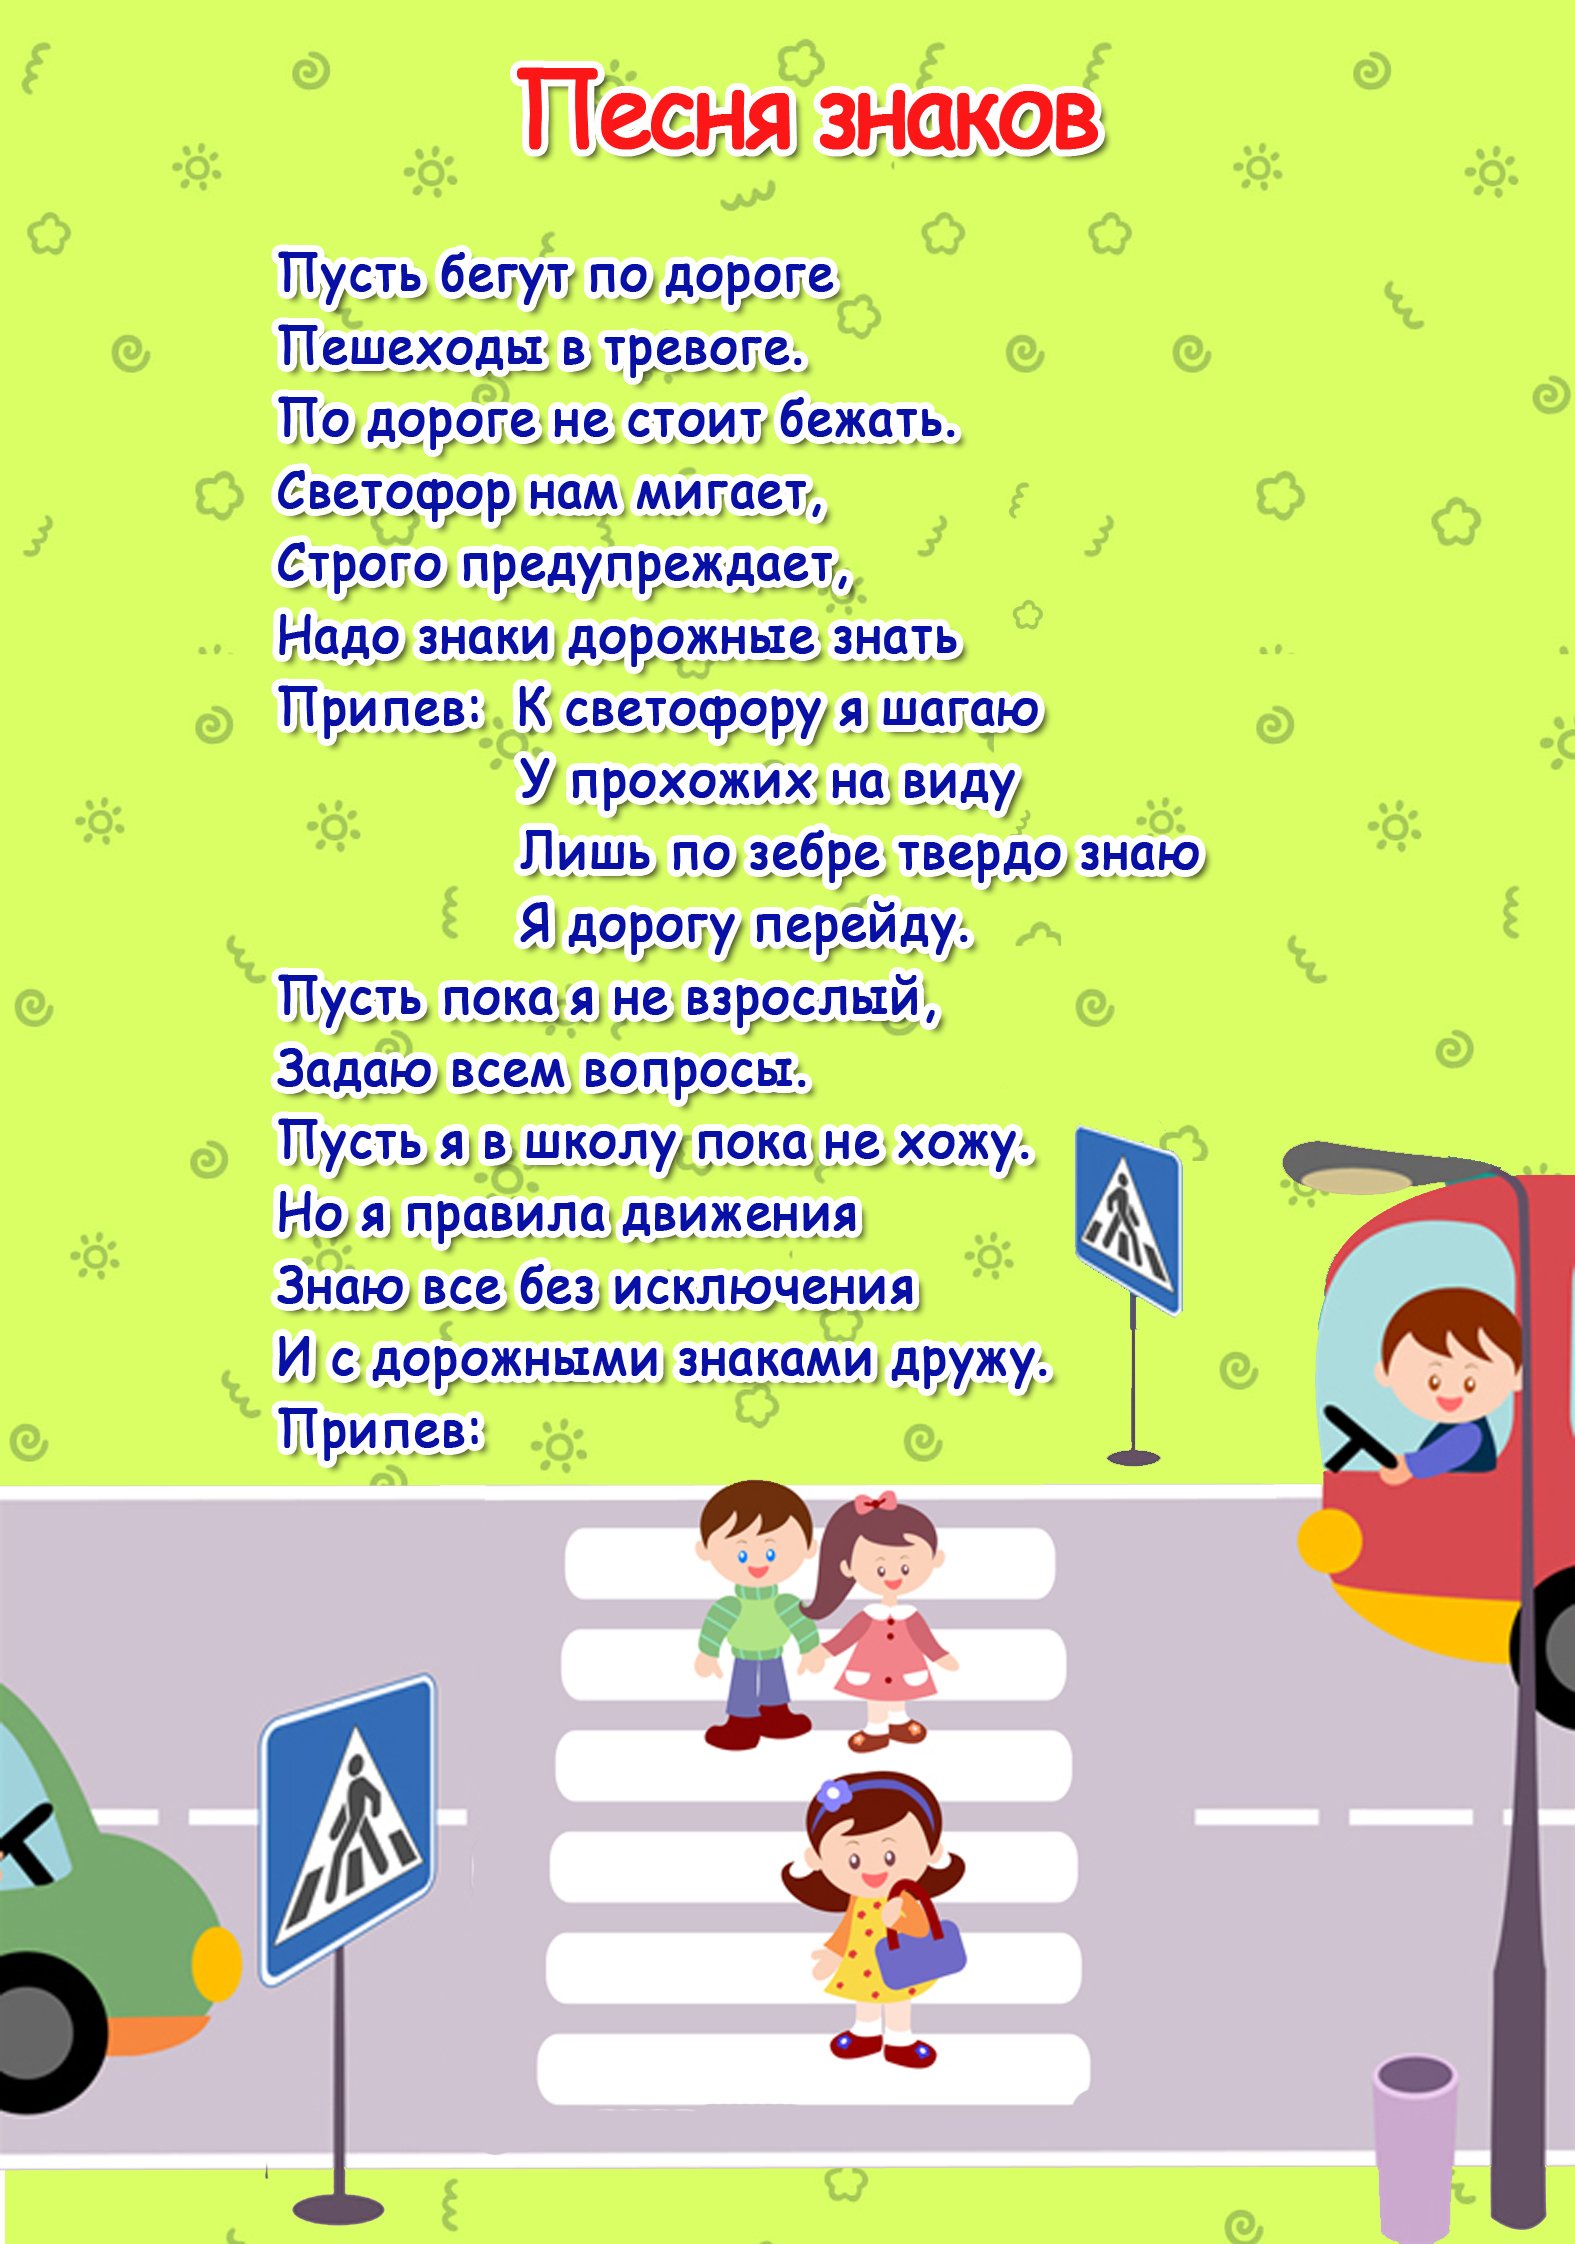 Стихотворения про движения. Стихи по правилам дорожного движения. ПДД для детей. Правила дорожного движения для детей. Стихи про ПДД для детей.